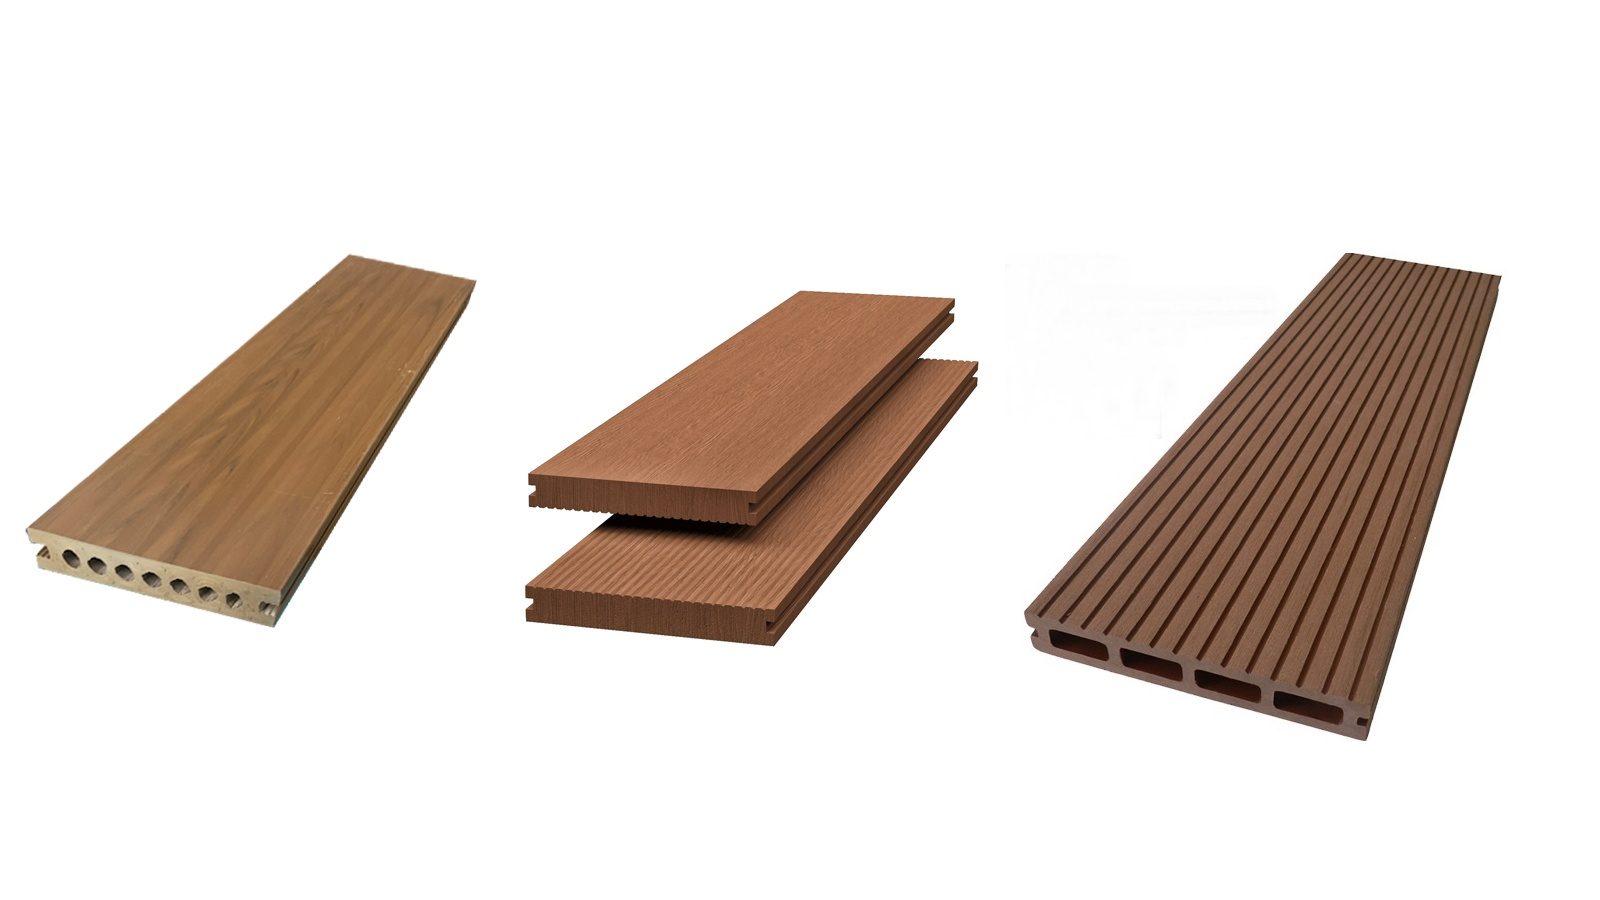 Ứng dụng gỗ nhựa composite cực kỳ đa dạng và được sử dụng rộng rãi trong nhiều lĩnh vực khác nhau. Gỗ nhựa composite giống như gỗ tự nhiên, nhưng lại có sức mạnh cao hơn và dễ dàng bảo trì hơn. Sử dụng gỗ nhựa composite giúp tiết kiệm chi phí xây dựng ngoài trời mà vẫn giữ được tính thẩm mỹ.